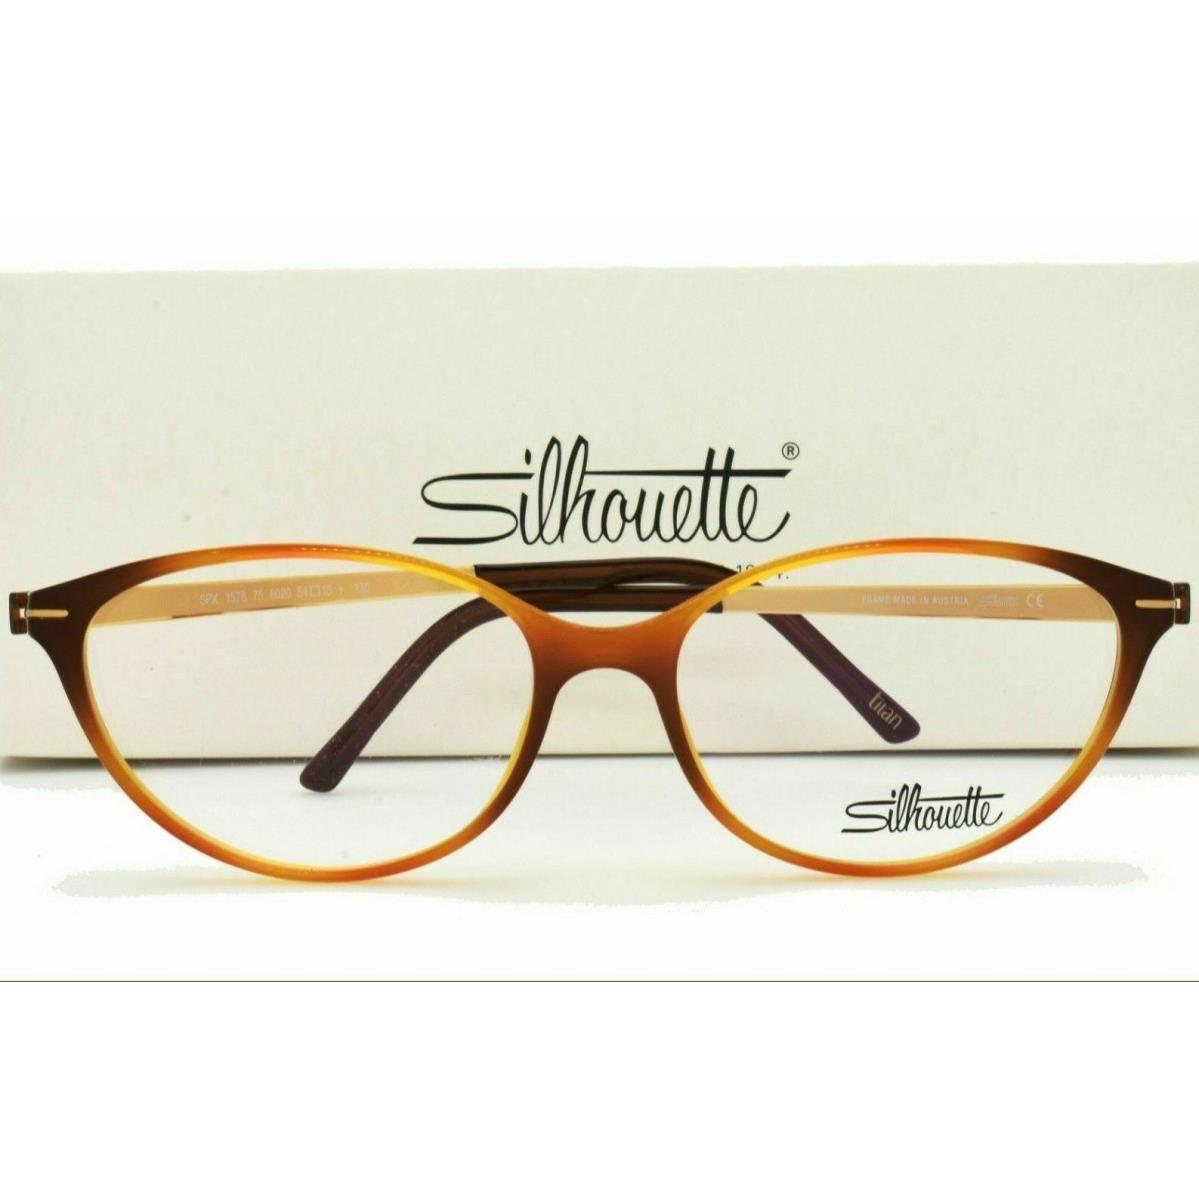 Silhouette eyeglasses  - Havana Tortoise & Gold Frame 1